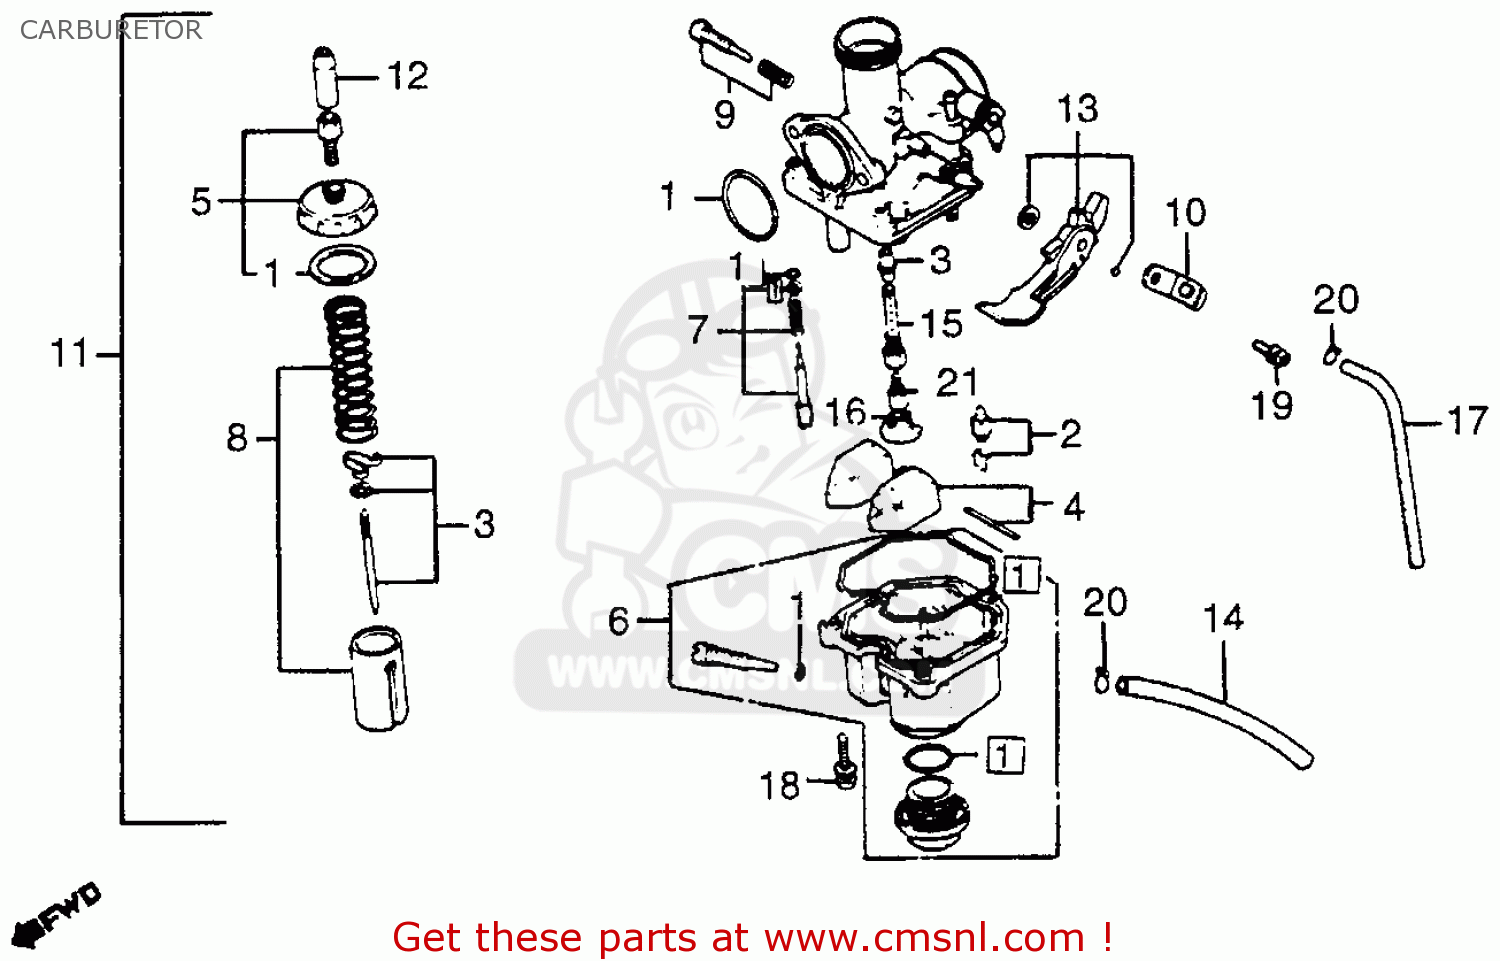 Honda xr200 carburetor diagram #1